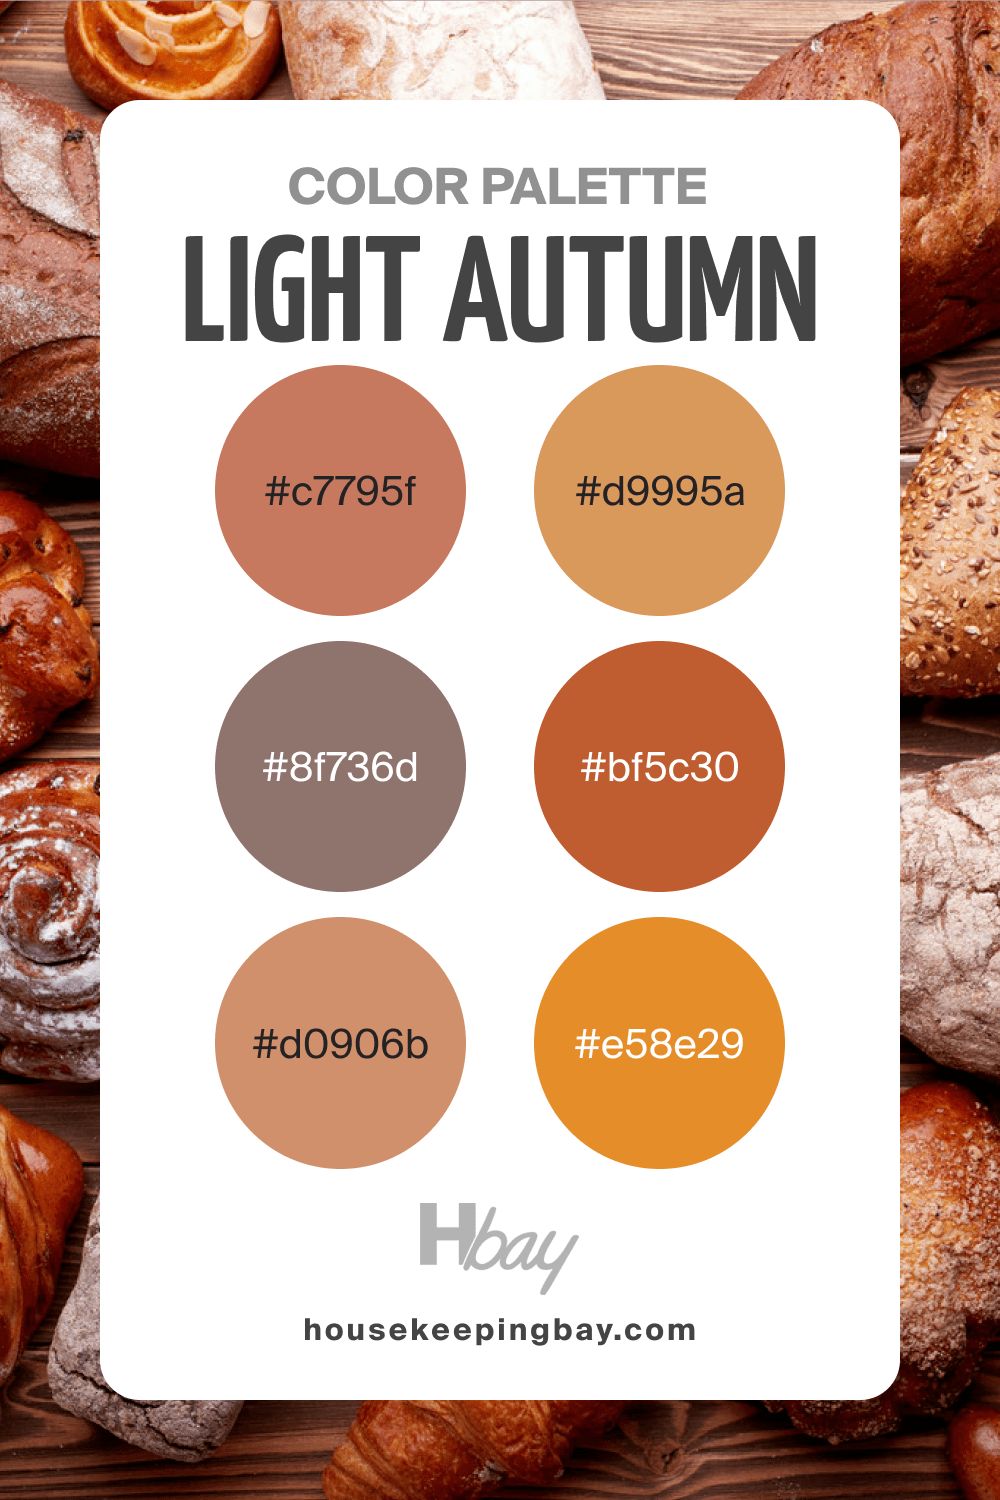 Light autumn color palette